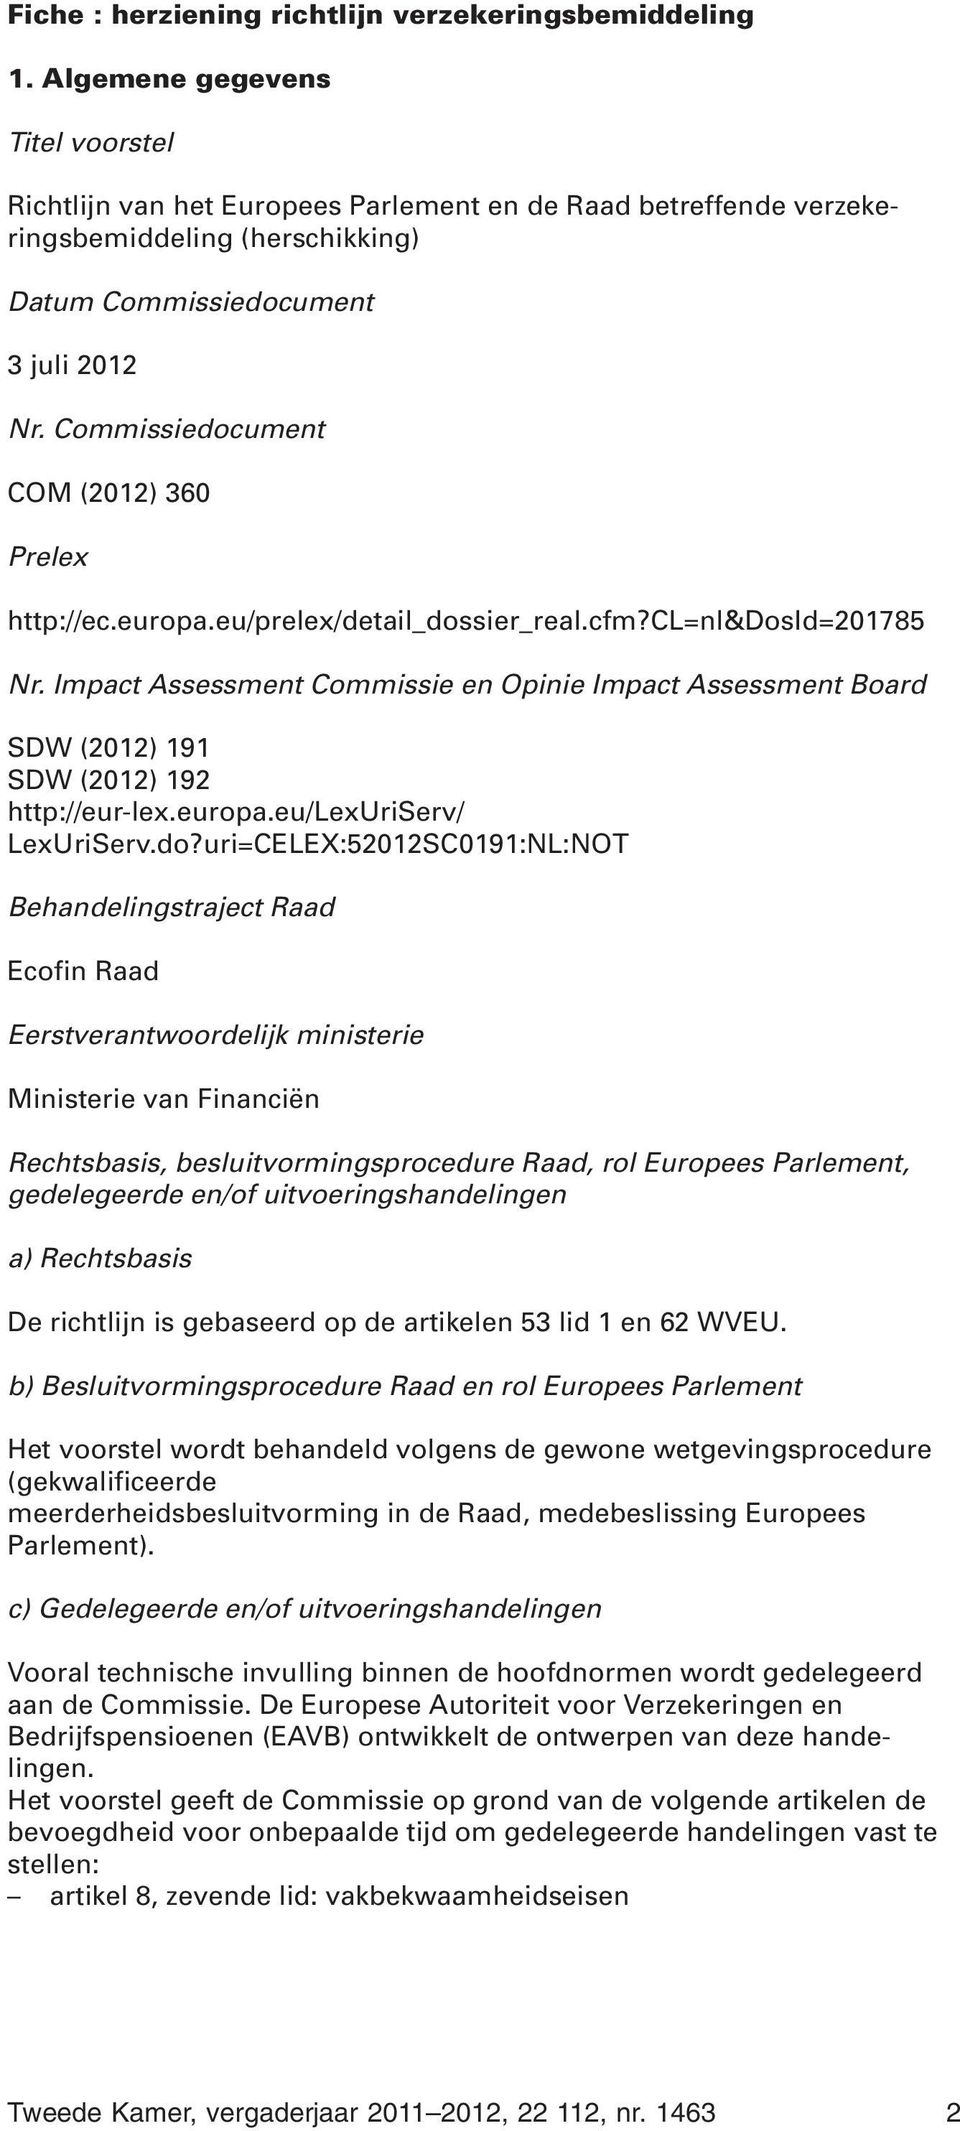 Commissiedocument COM (2012) 360 Prelex http://ec.europa.eu/prelex/detail_dossier_real.cfm?cl=nl&dosid=201785 Nr.